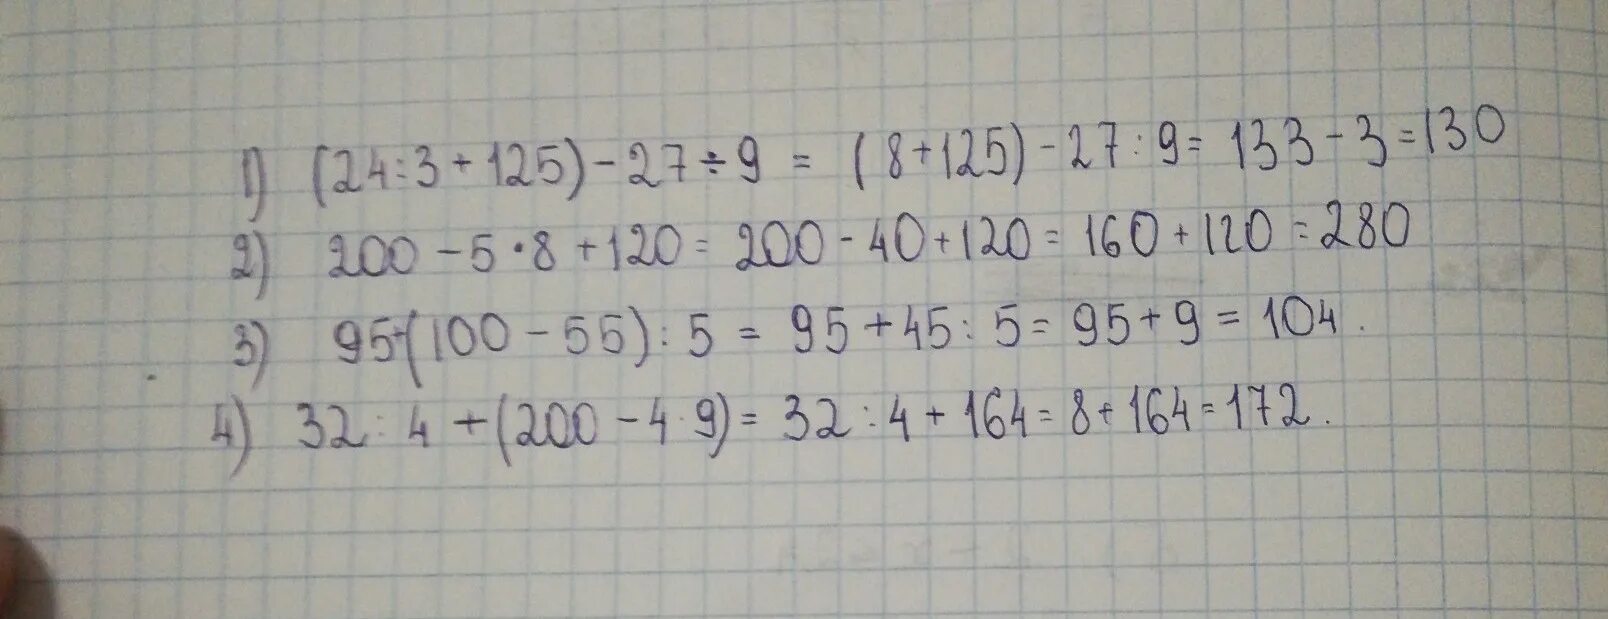 5 1 125 3 1 27. 4.200/25. 200•4+200=. 100-27×9-4×3. 125•5•5•5.